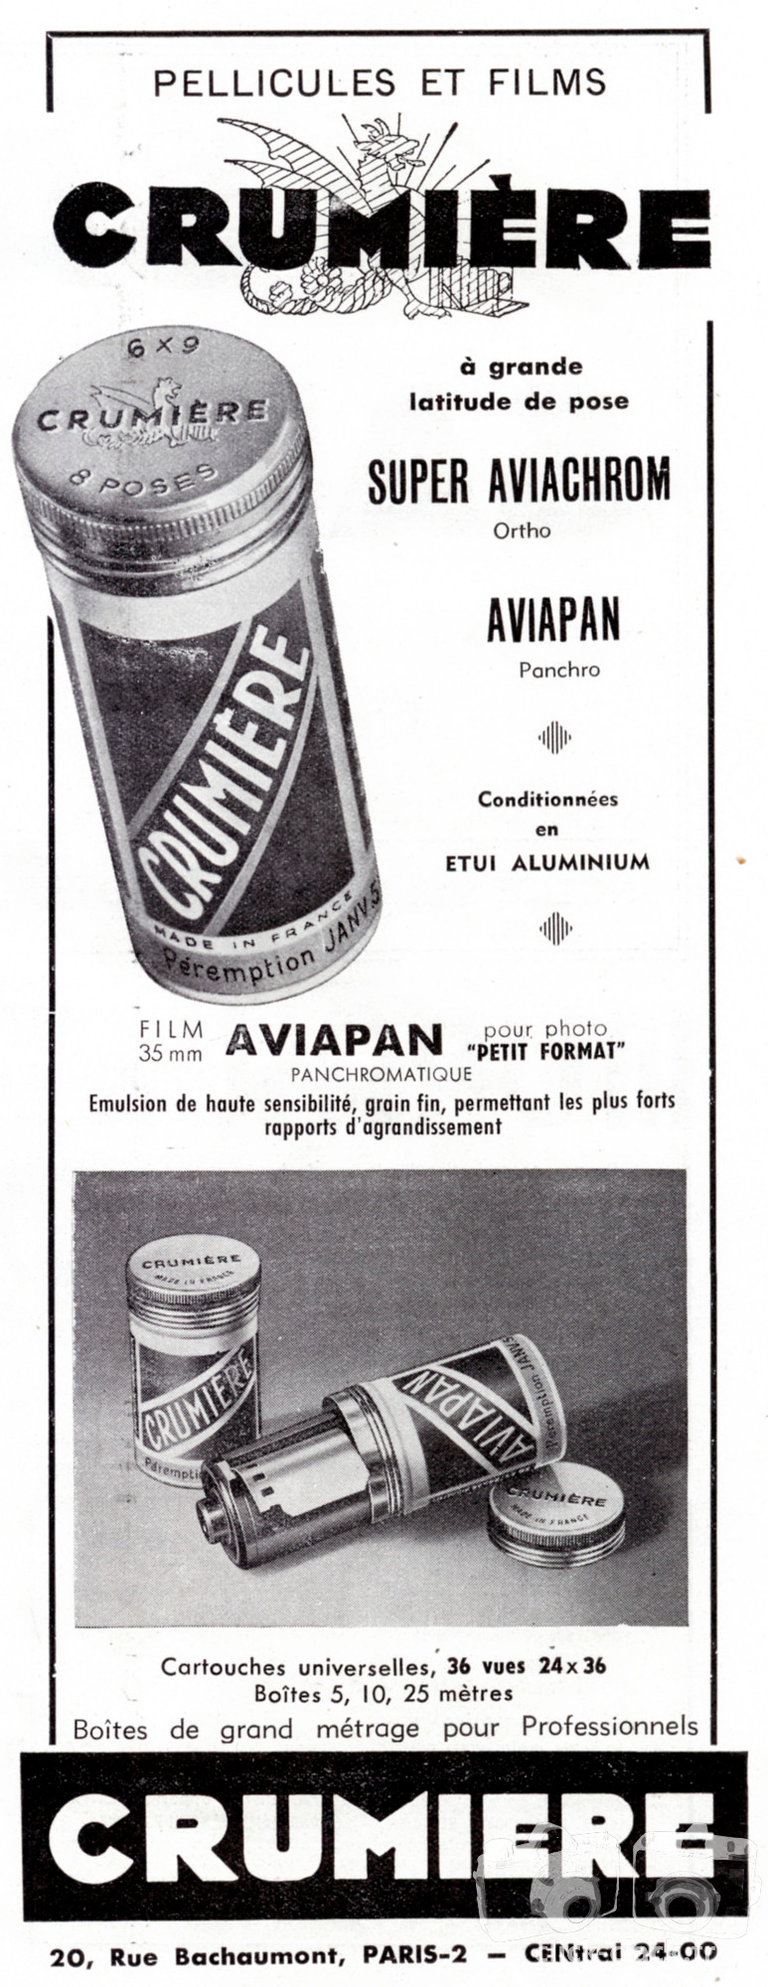 Crumière - Pellicule Super-Aviachrom, Aviapan - 1951